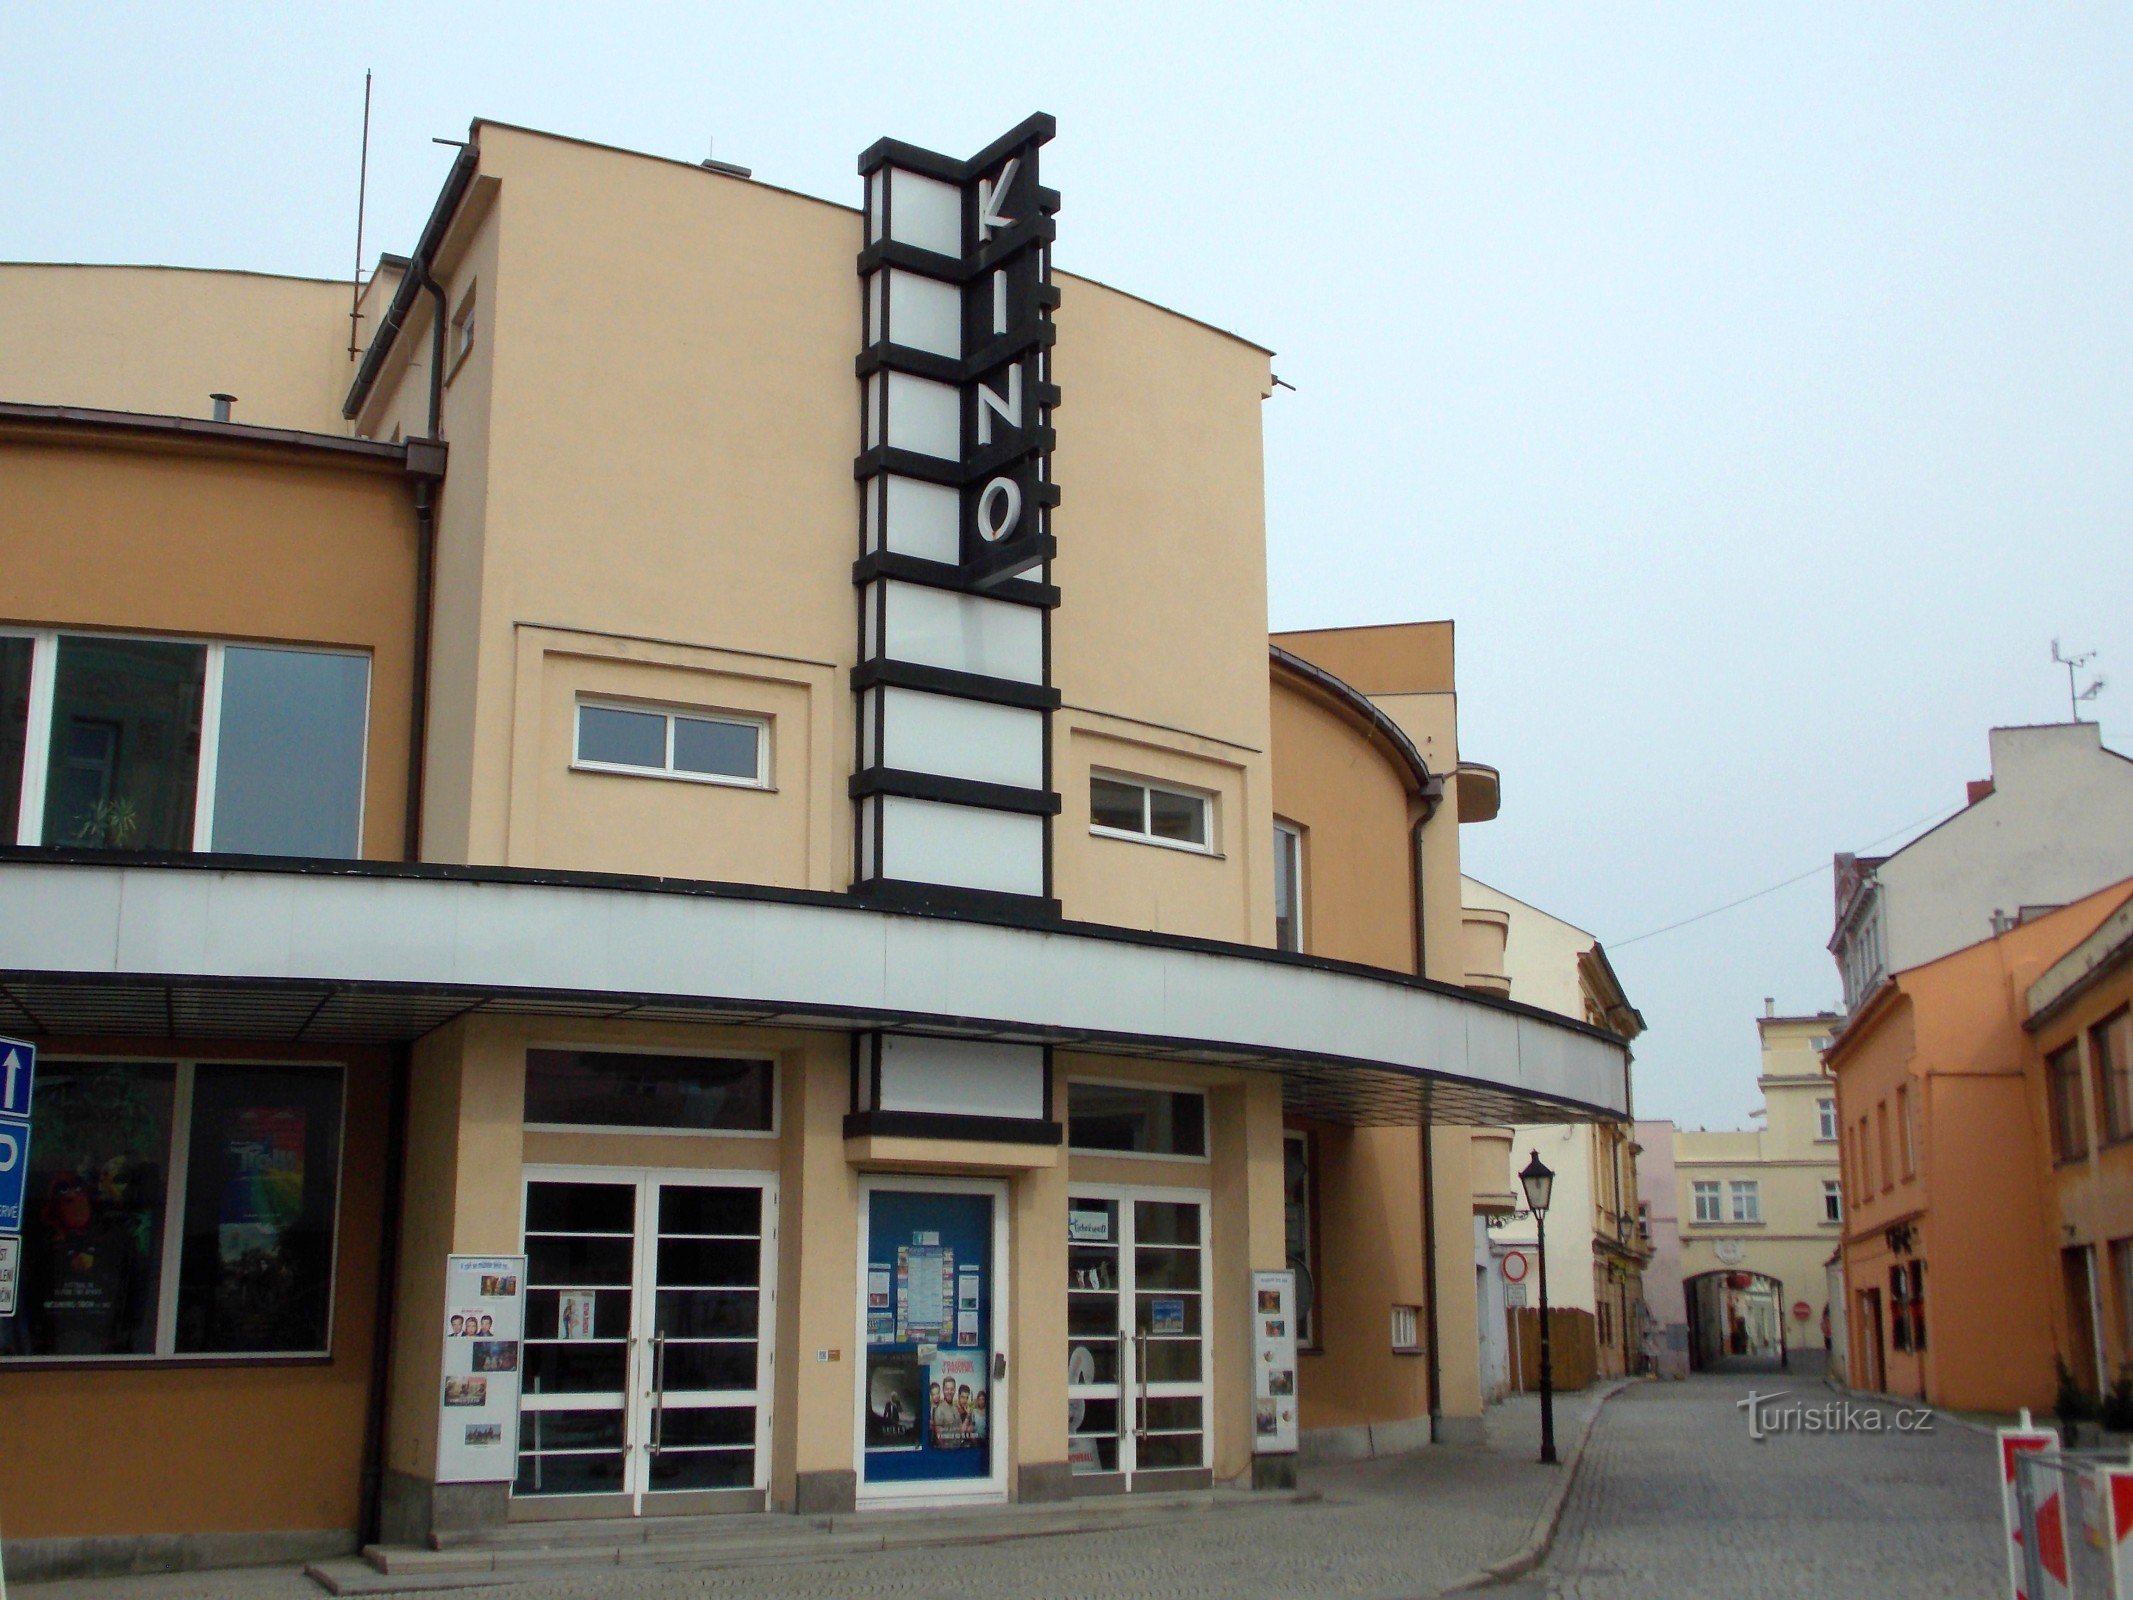 Cinema Květen em Nové Jičín